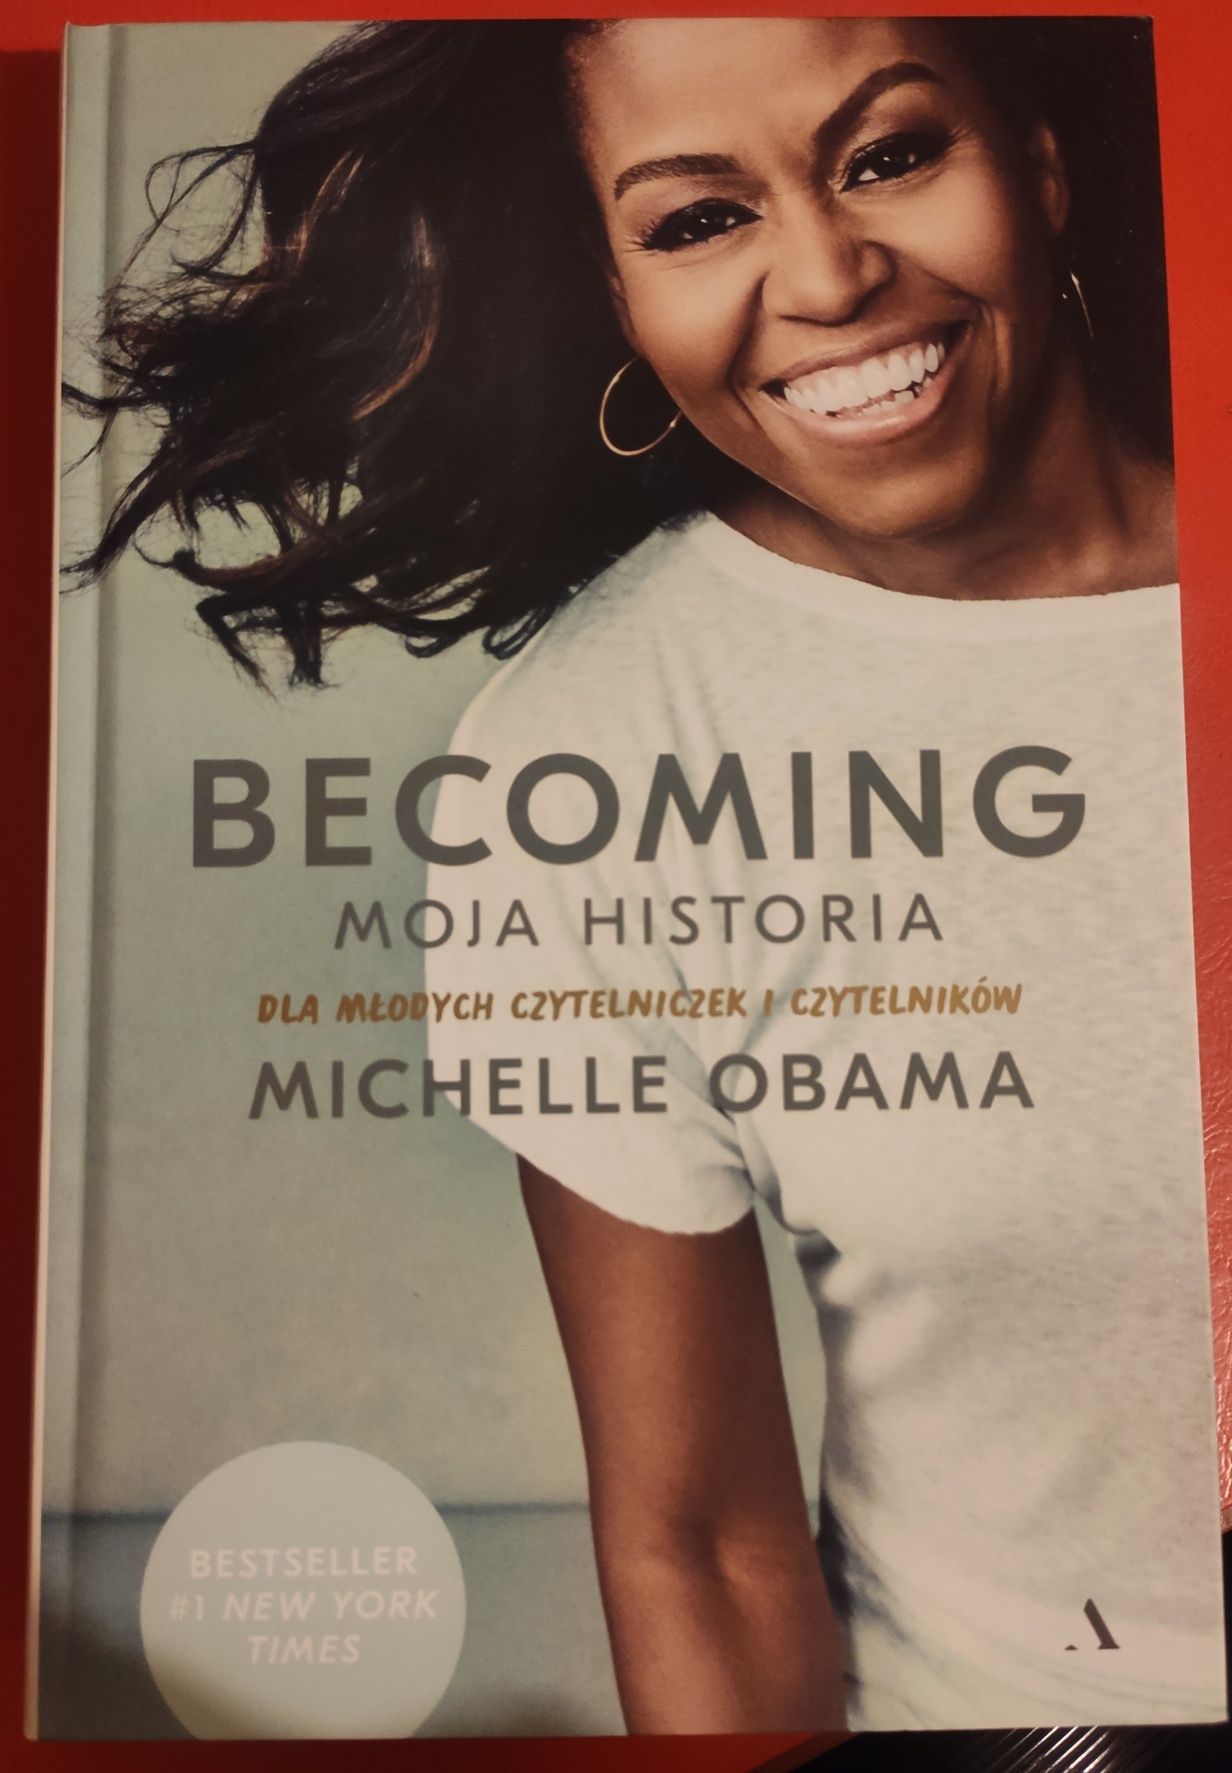 Becoming moja historia Michelle Obama